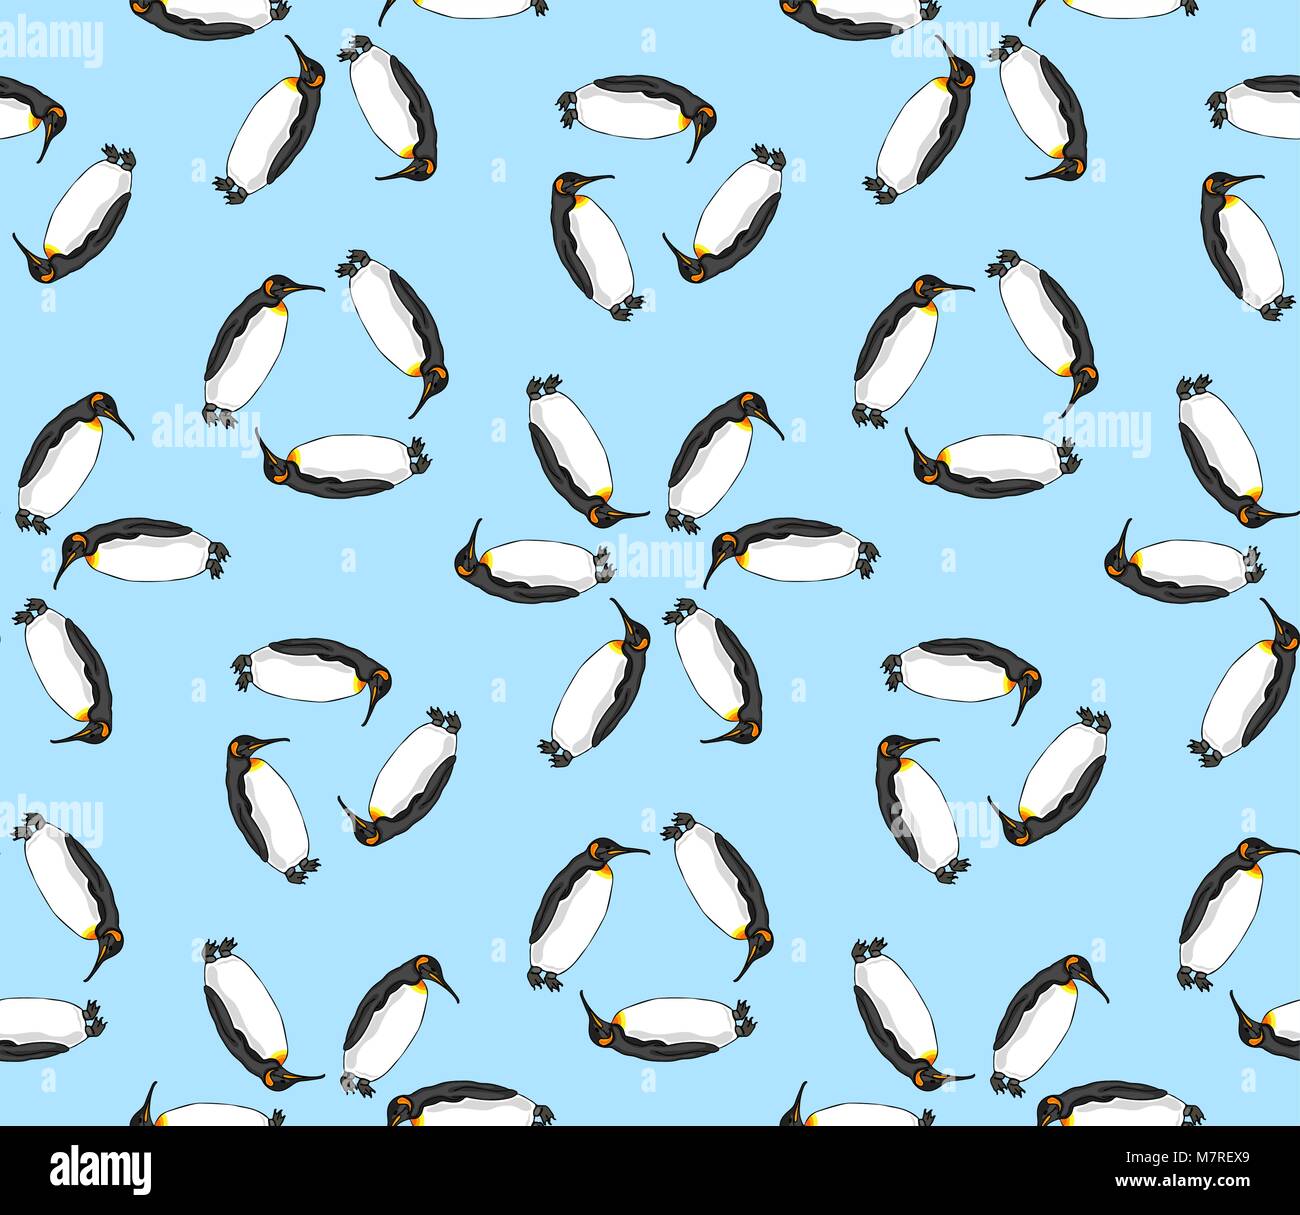 Modèle de vecteur seamless penguin sur fond bleu. Illustration de manchots empereurs d'oiseaux Illustration de Vecteur